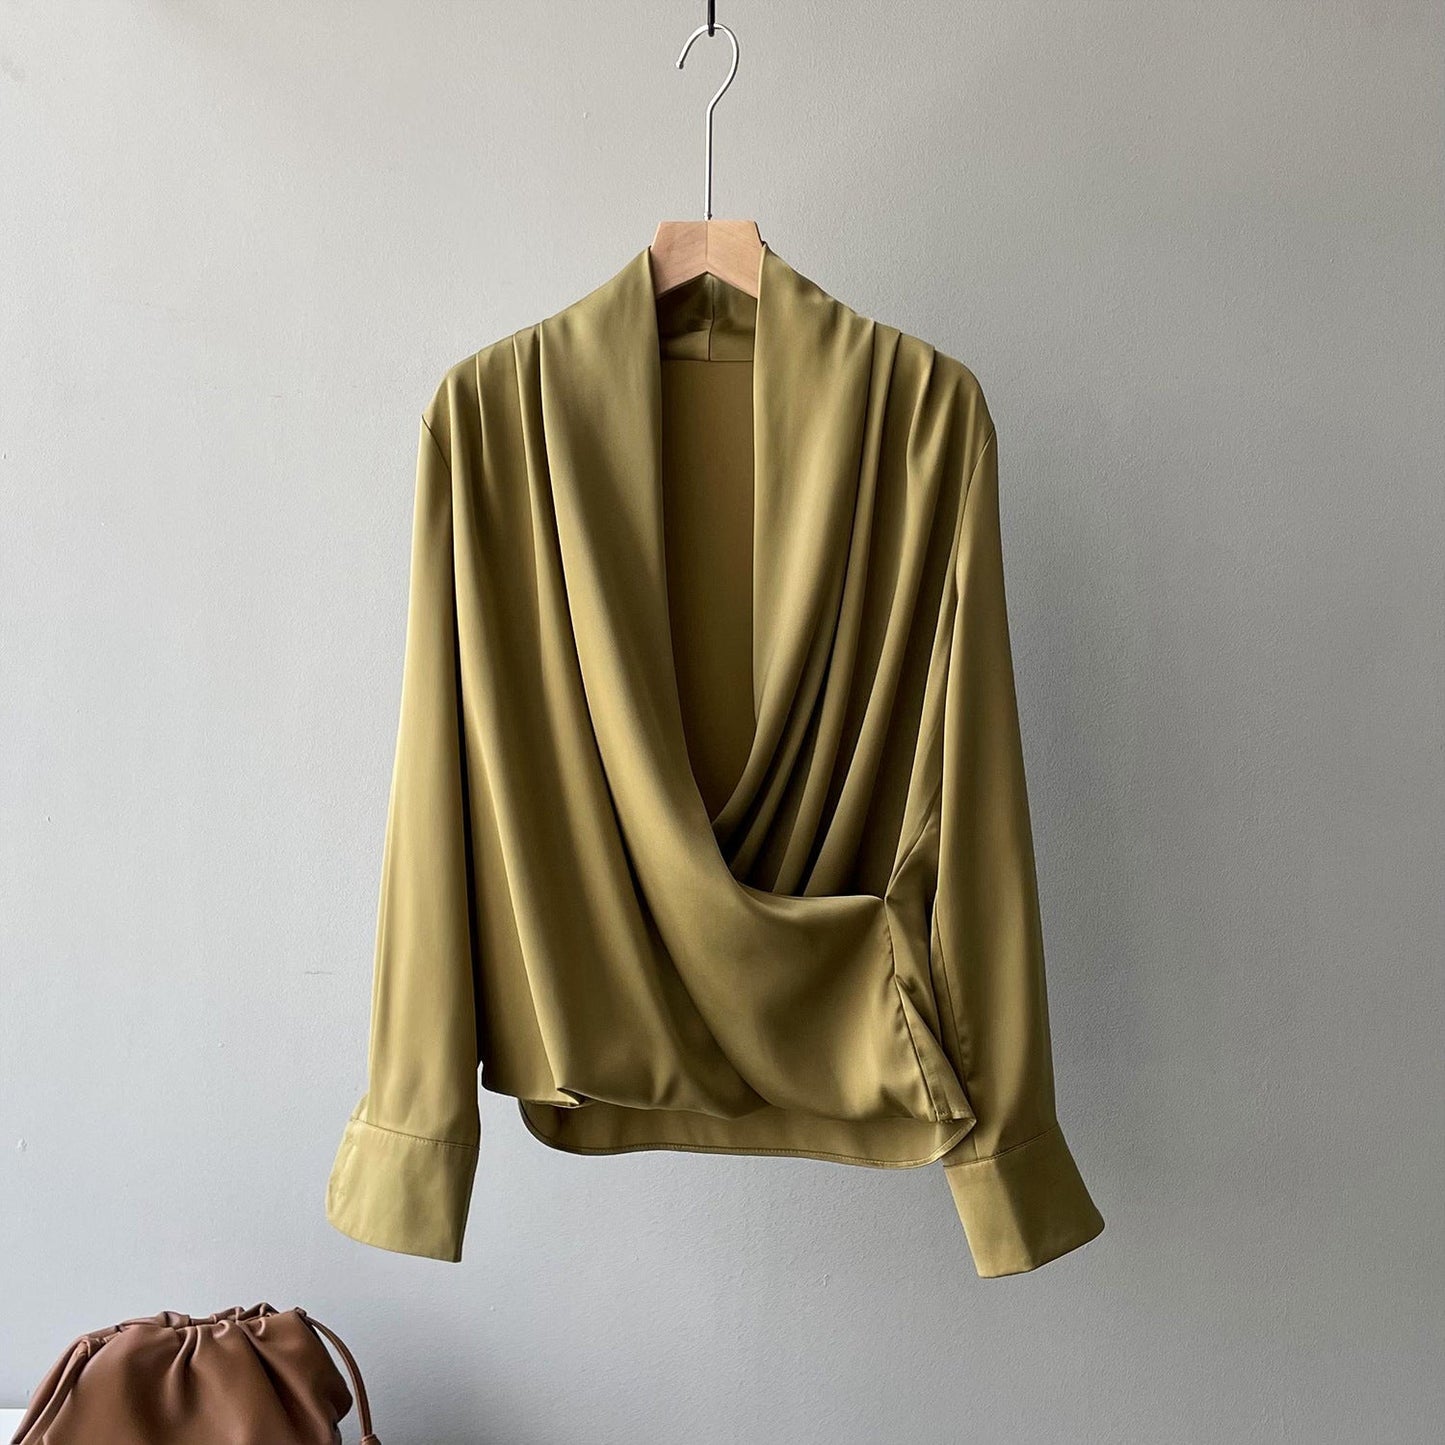 Elegant Satin Long Sleeves Office Lady Shirts-Shirts & Tops-Green-M-Free Shipping at meselling99